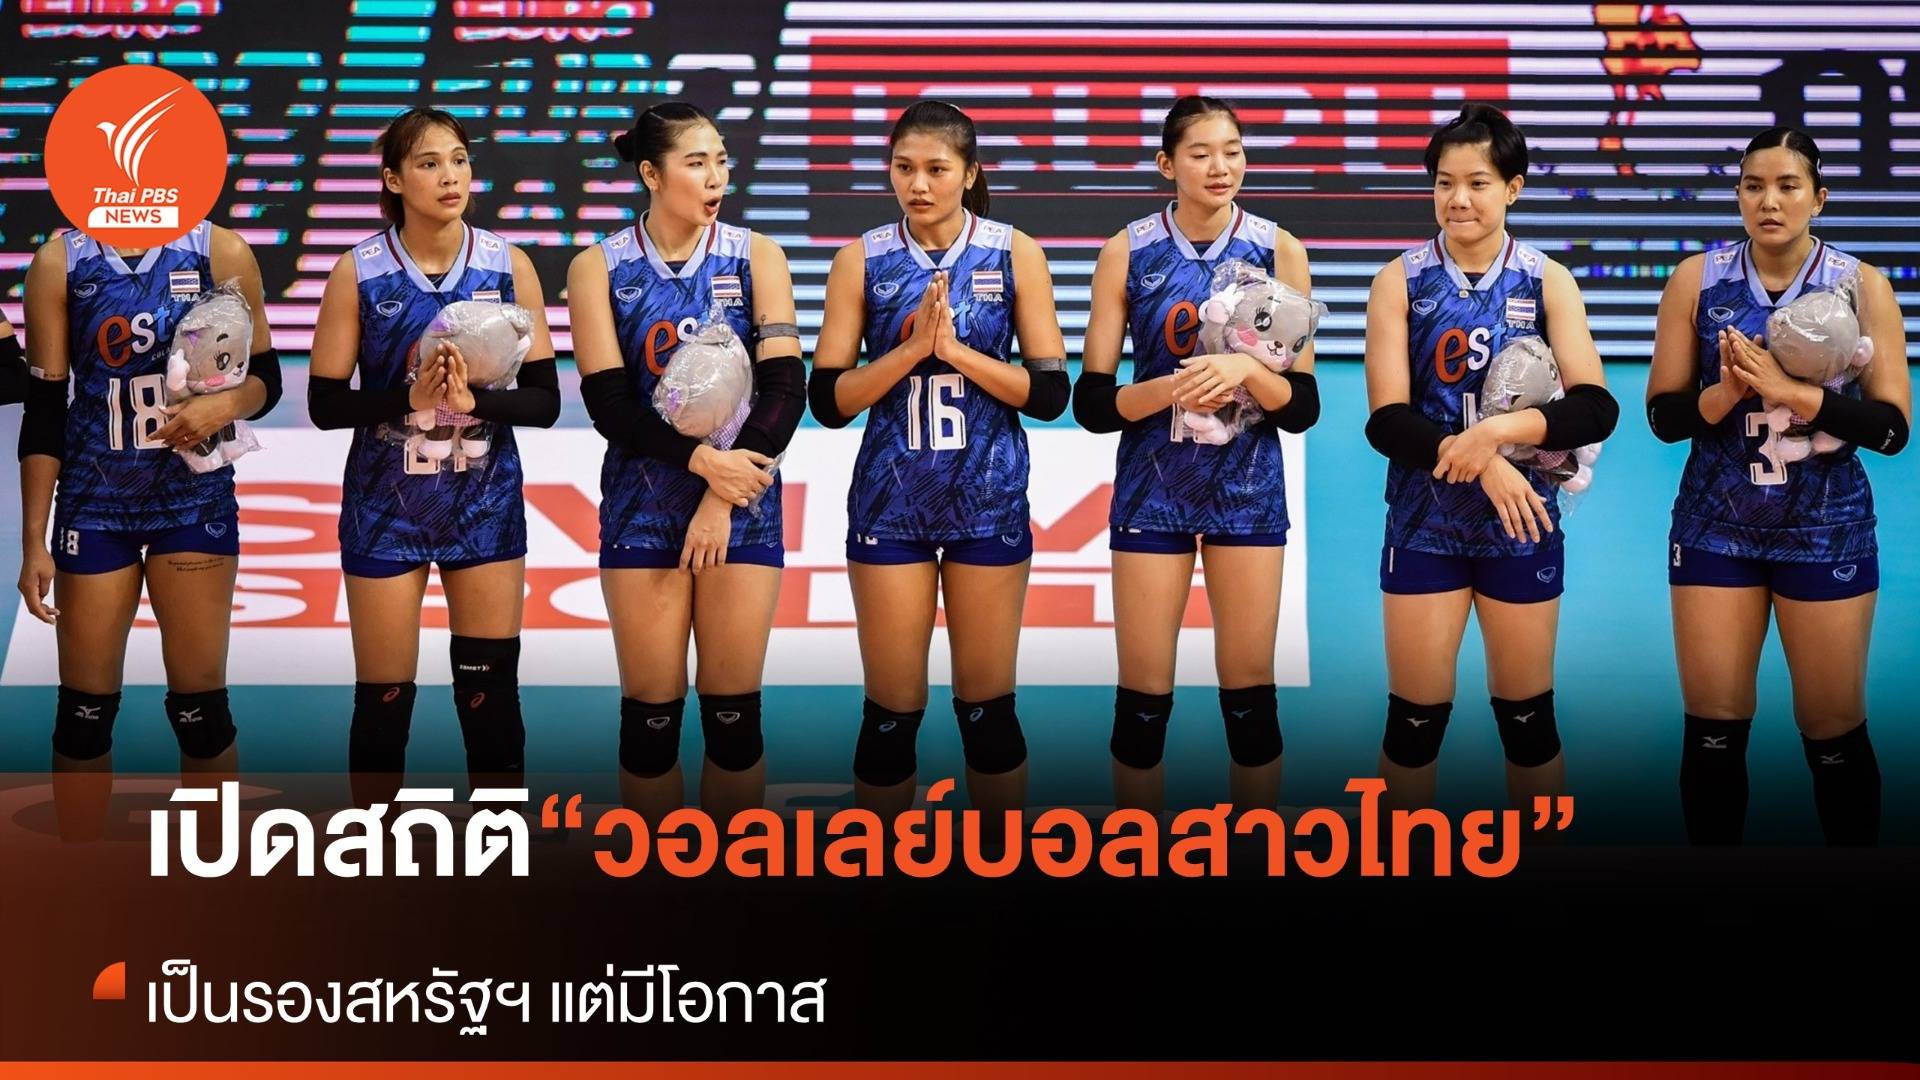 เปิดสถิติทีมสาวไทย เป็นรองสหรัฐฯ แต่ยังมีโอกาส